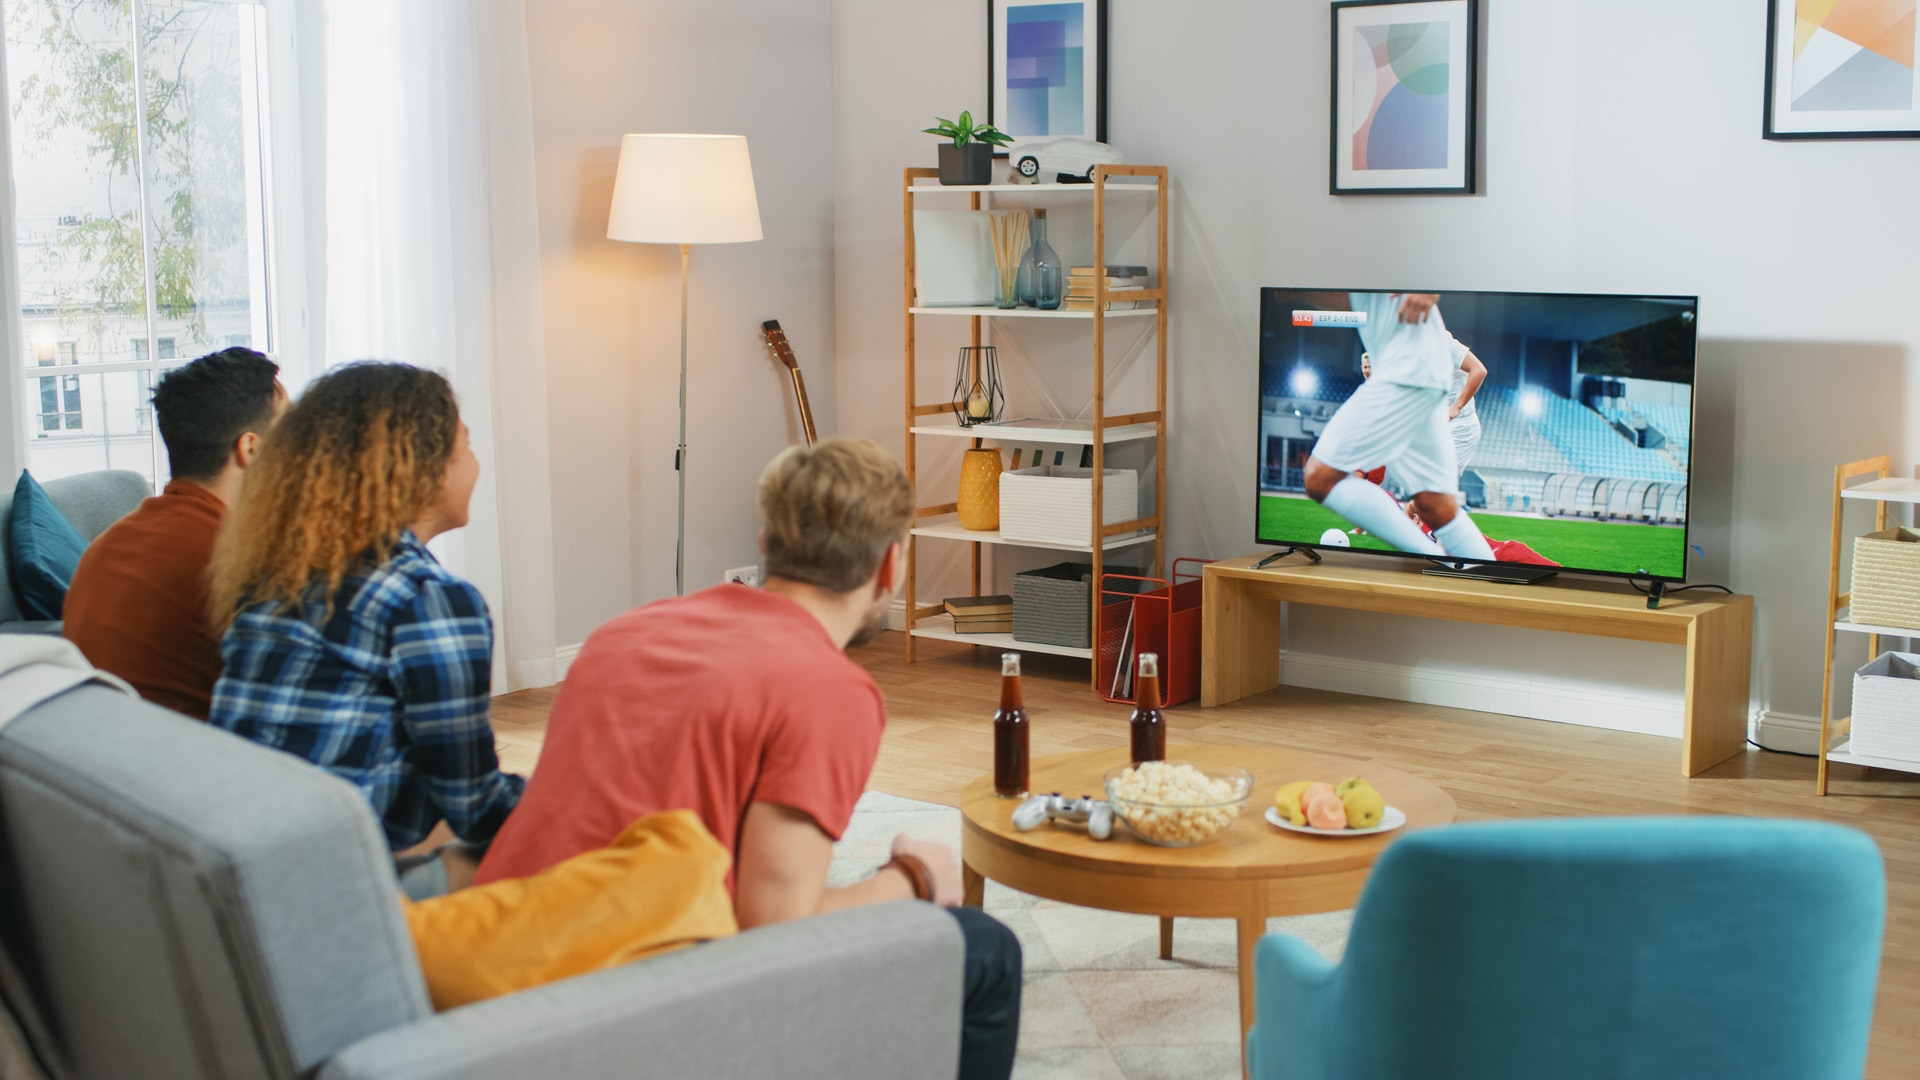 Tre appassionati di sport seduti su un divano in salotto guardano un'importante partita di calcio, preoccupandosi e tifando per la propria squadra